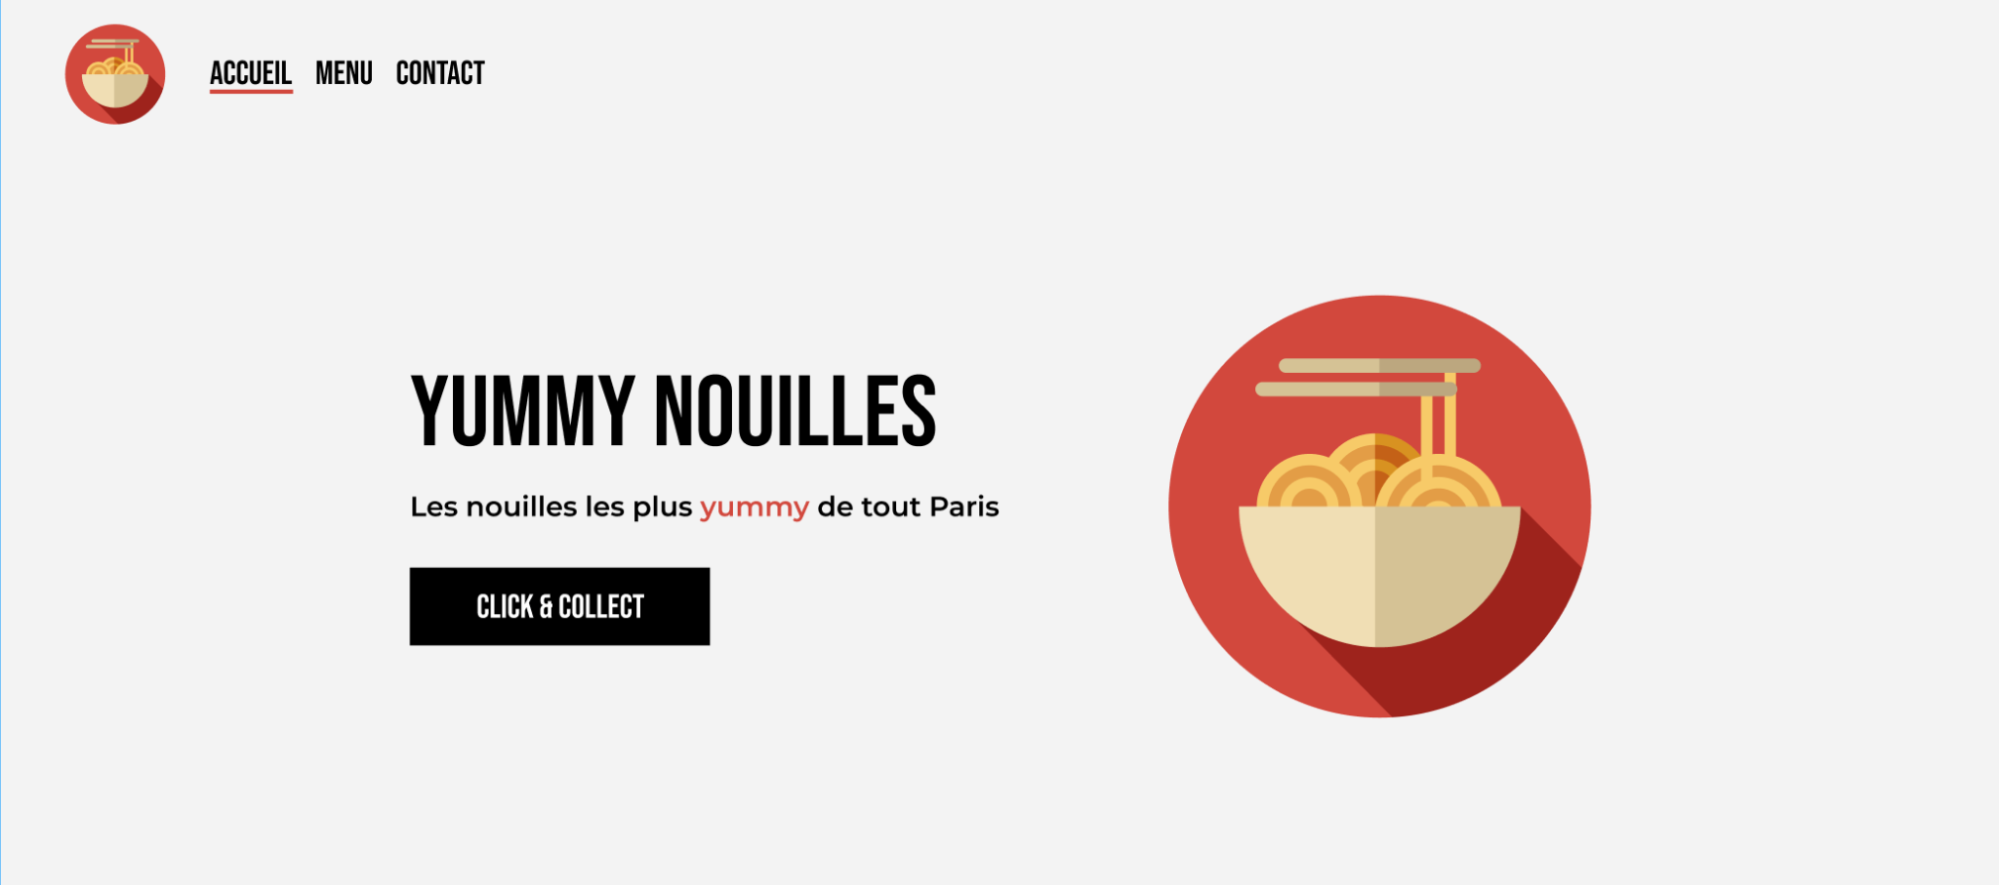 En haut à gauche on retrouve les menus Accueil, Menu et Contact. Au centre, le titre Yummy Nouilles, le sous-titre Les nouilles les plus yummy de tout Paris, le bouton Click & Collect et le logo Yummy Nouilles.